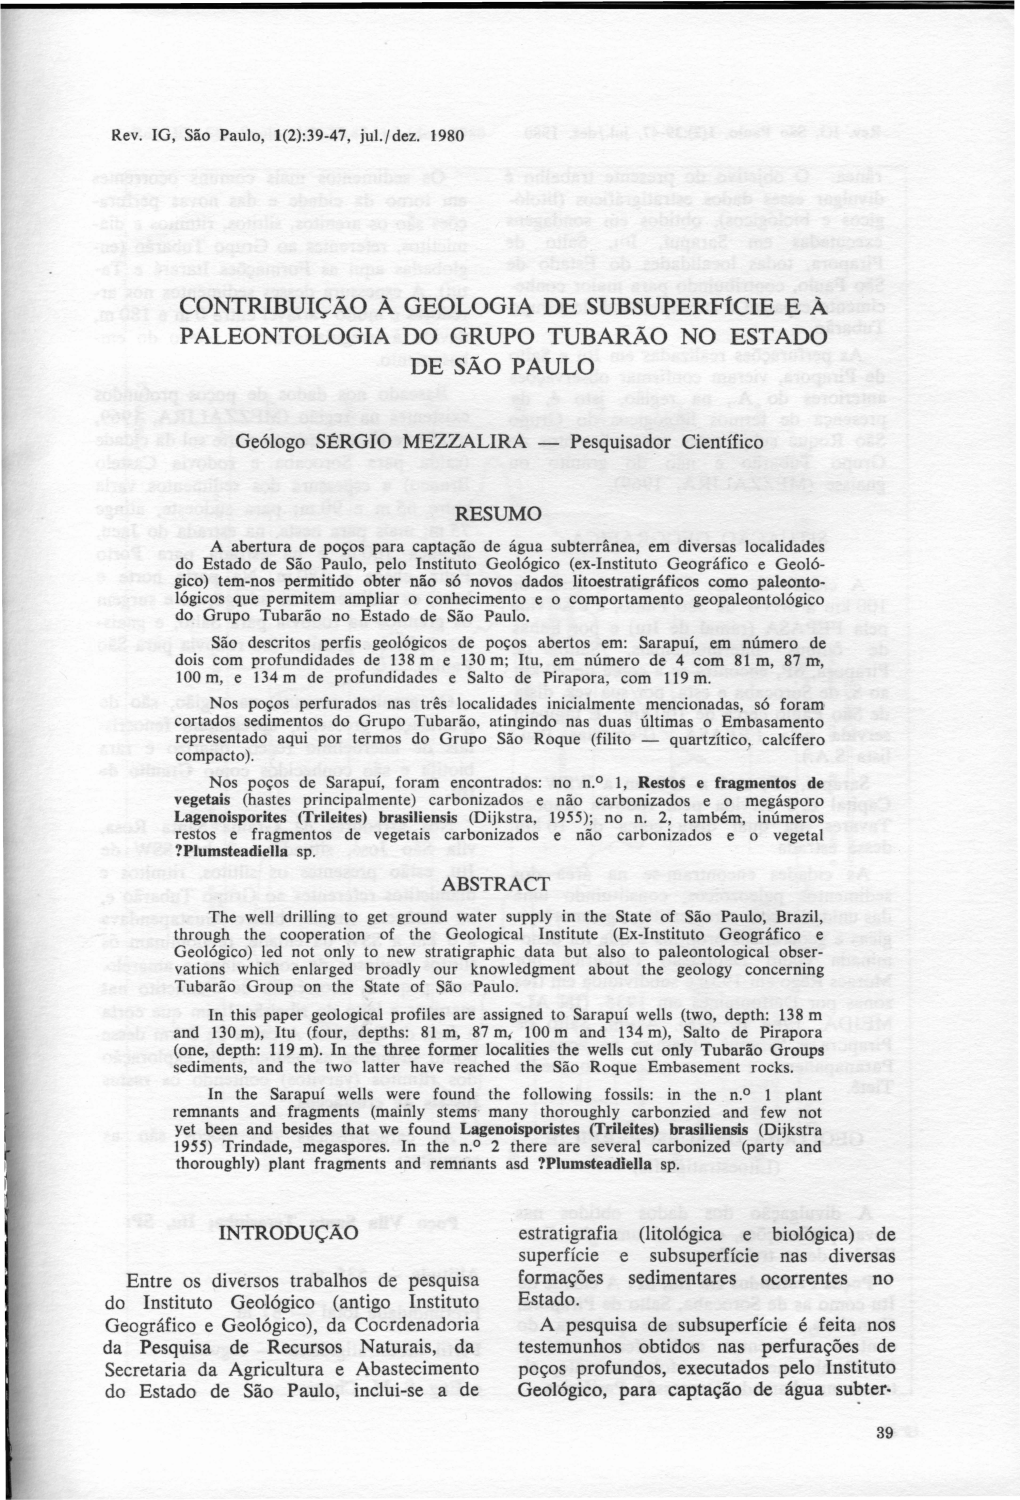 CONTRIBUIÇÃO À GEOLOGIA DE Subsuperftcie E À PALEONTOLOGIA DO GRUPO TUBARÃO NO ESTADO DE SÃO PAULO